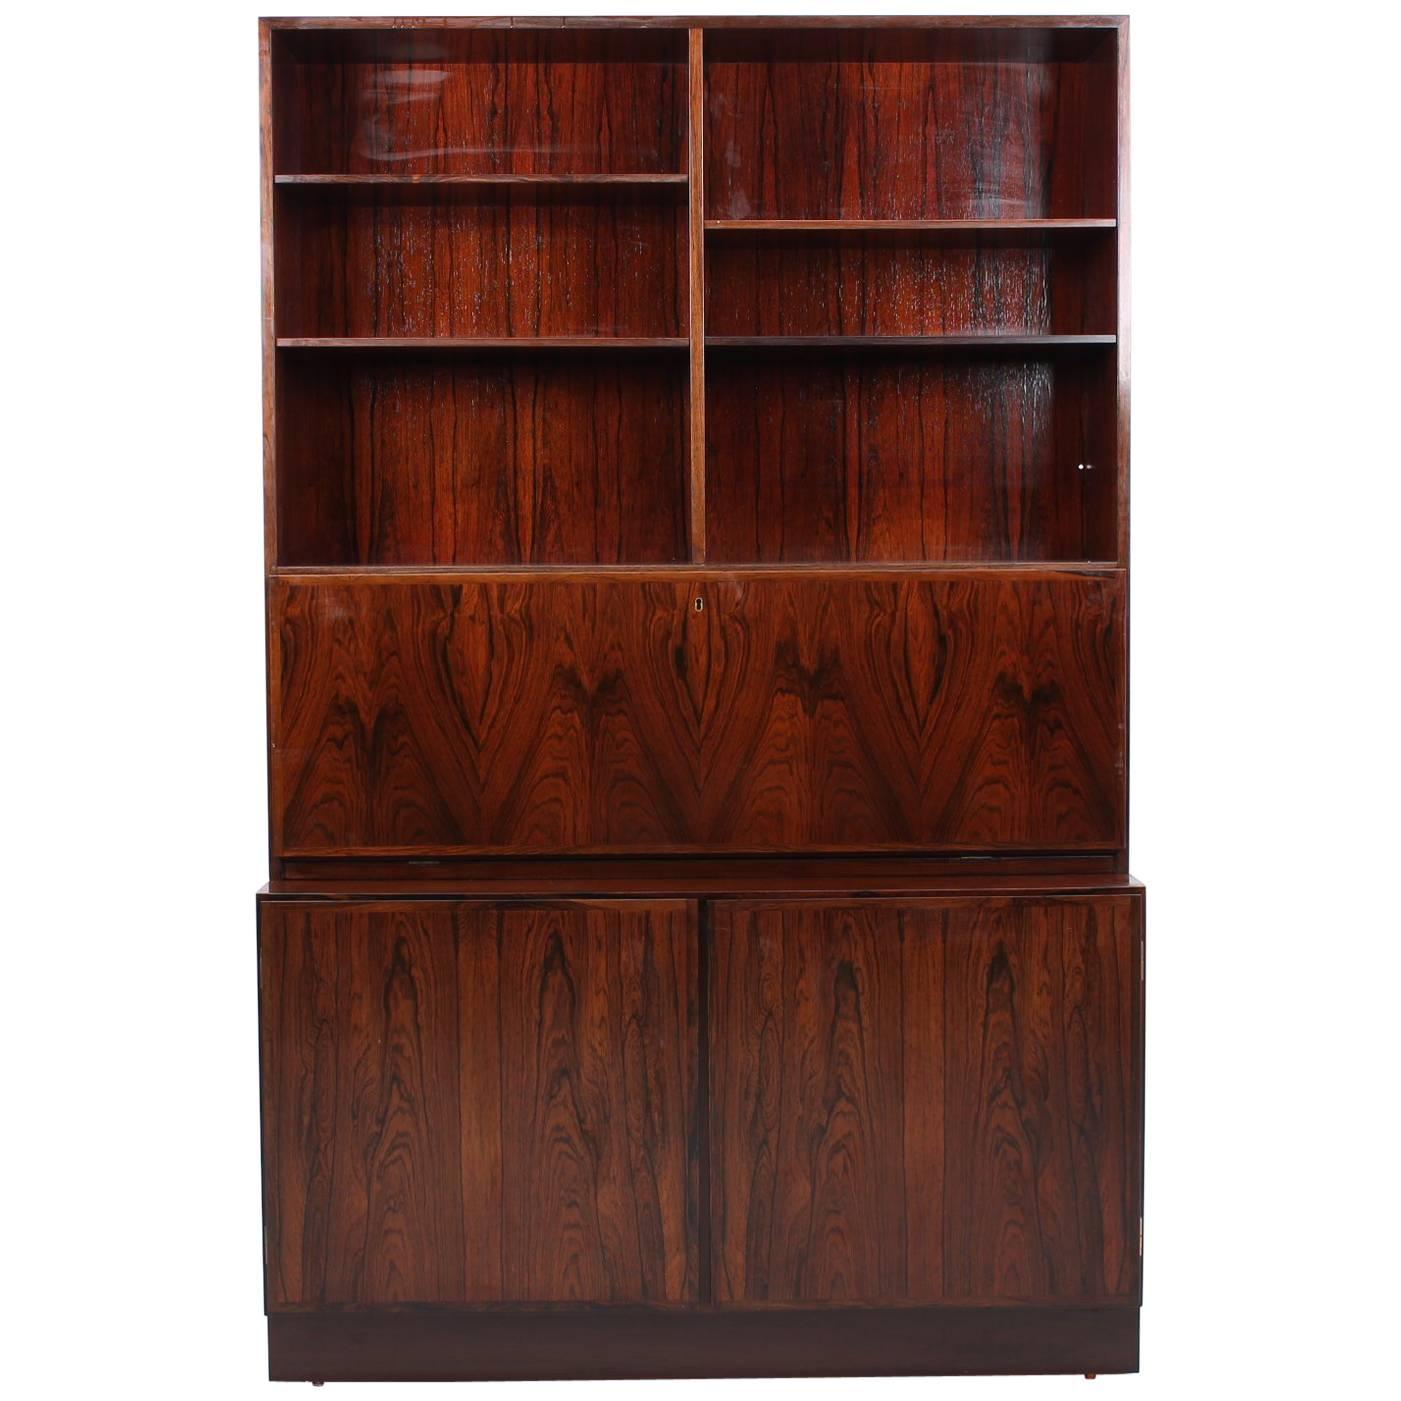 Rosewood Model 9 Secretary or Bookcase by Gunni Omann for Omann Jun